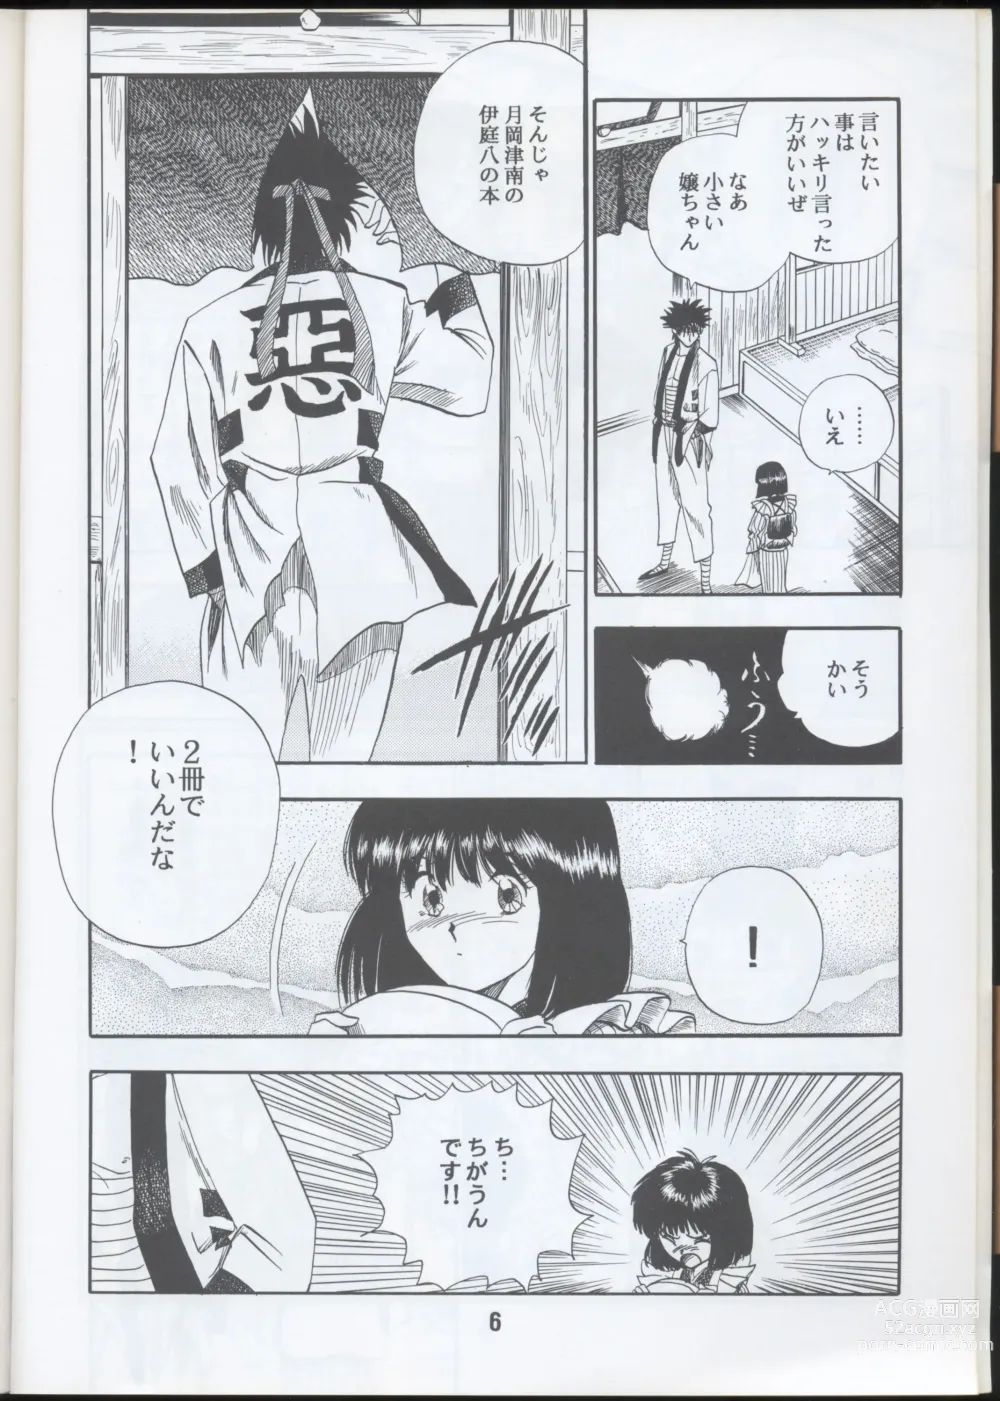 Page 6 of doujinshi Rurouni Kenshin Oro! 2